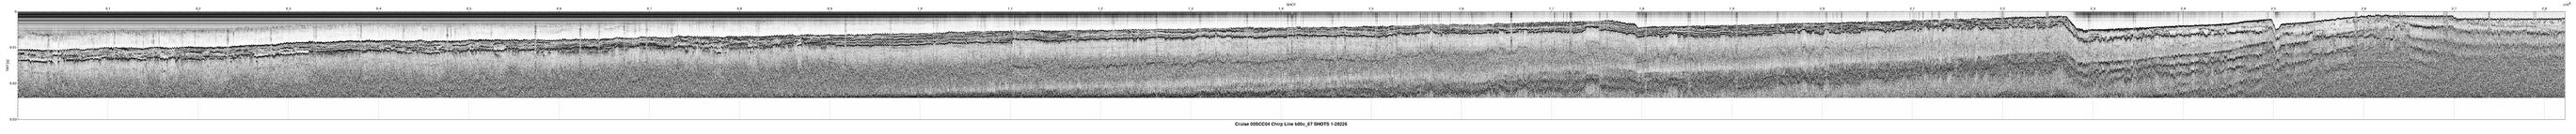 00SCC04 b00c_67 seismic profile image